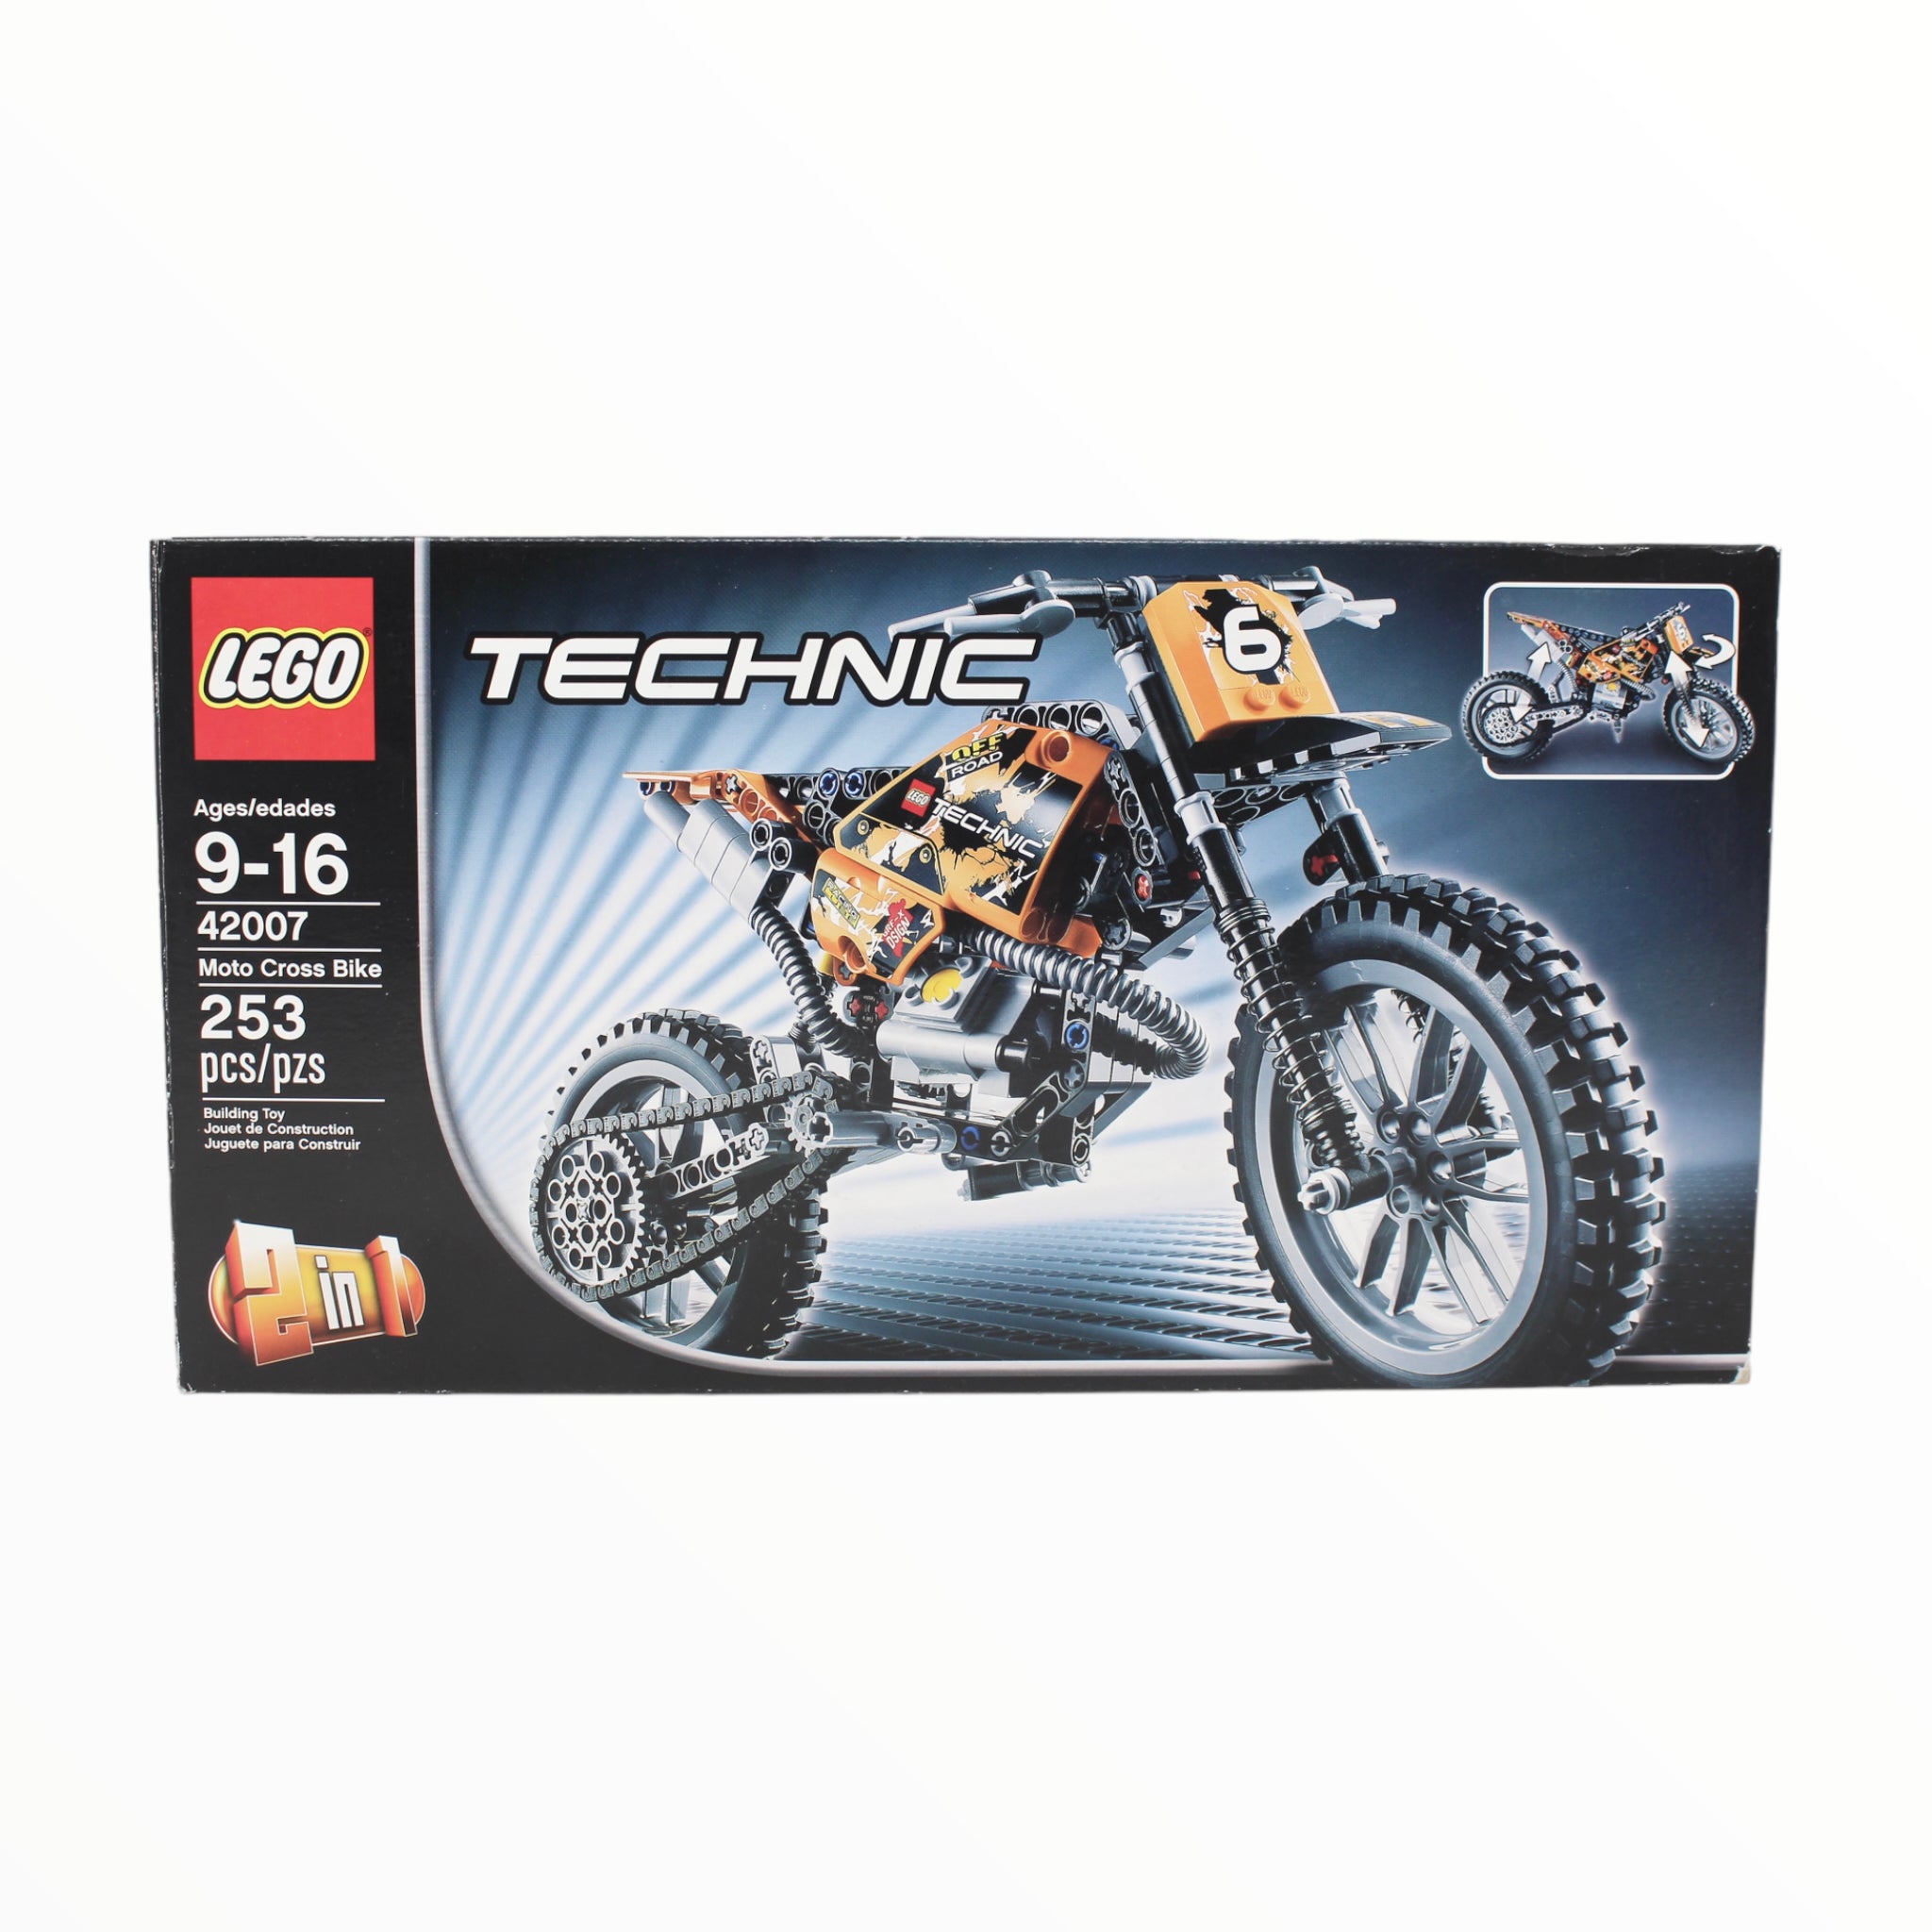 Certified Used Set 42007 Technic Moto Cross Bike